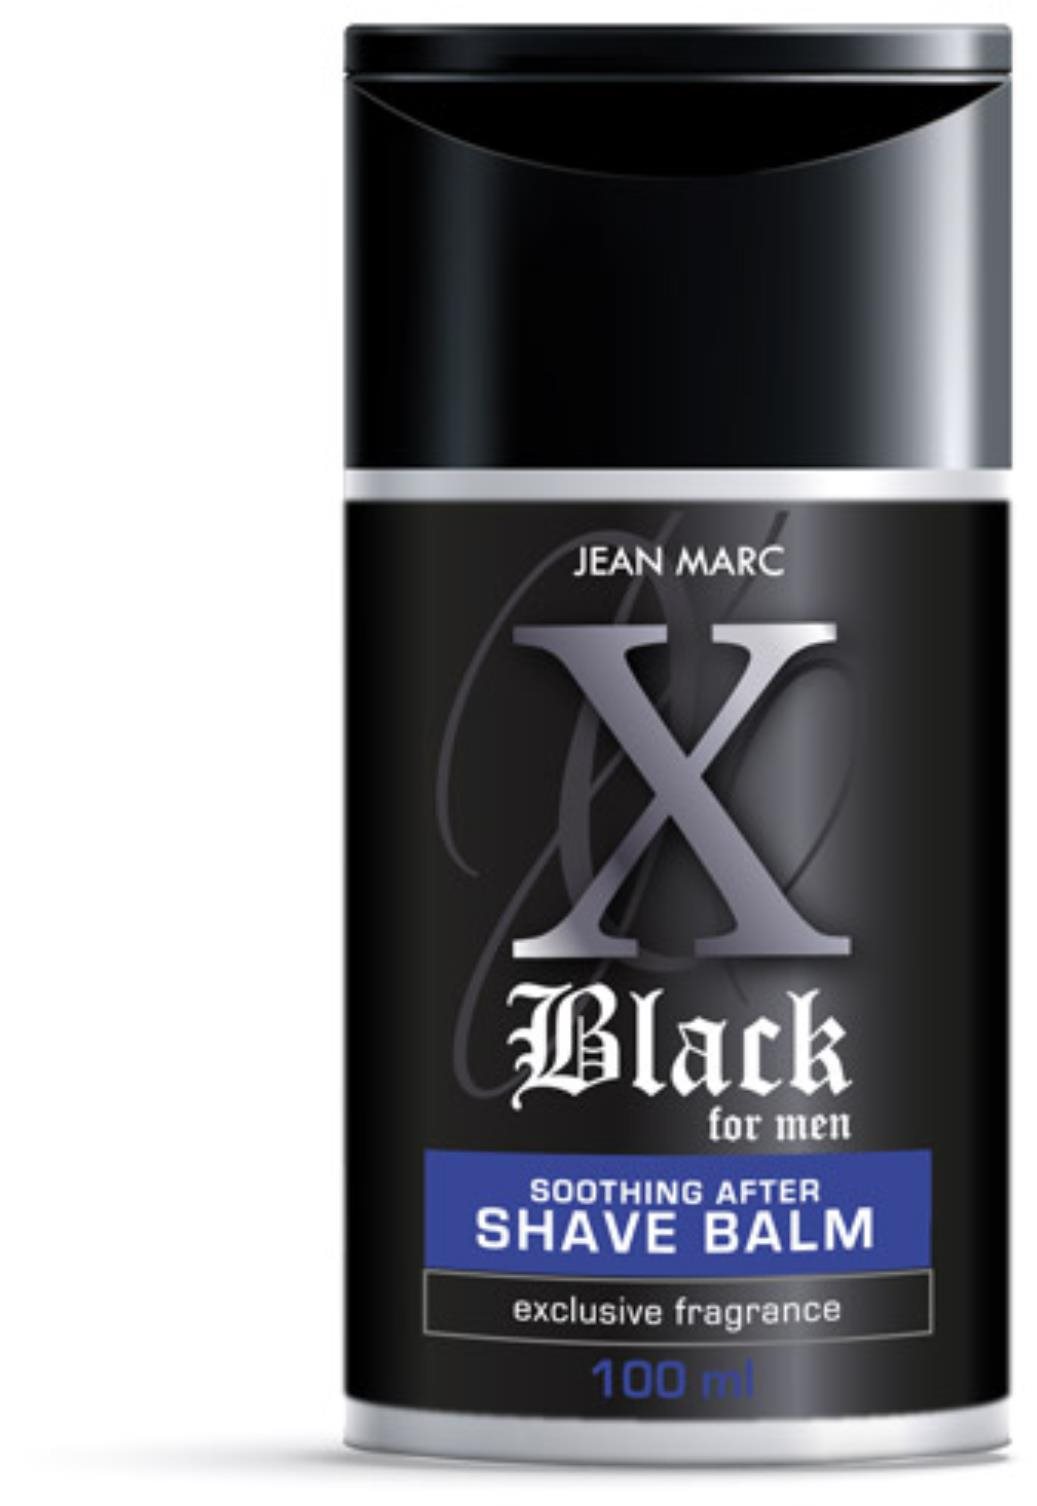 Borotválkozás utáni balzsam JEAN MARC borotválkozás utáni balzsam X Black 100 ml